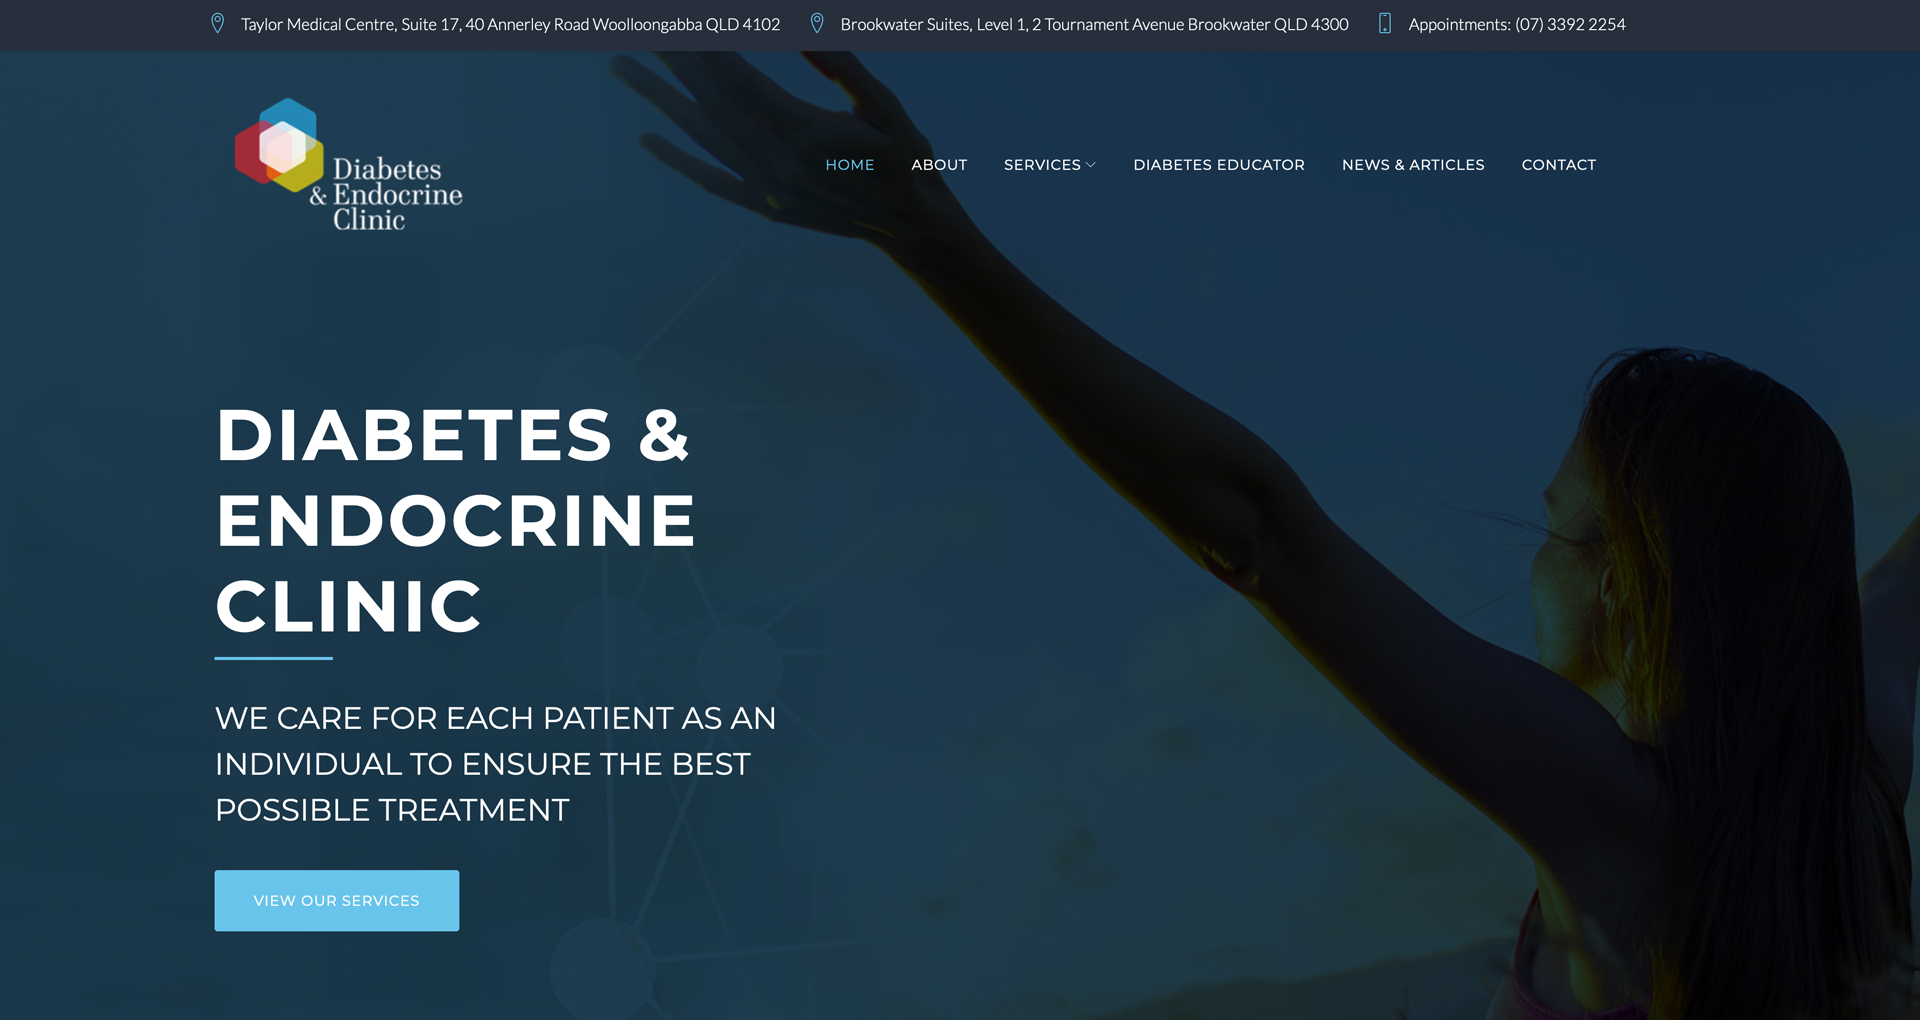 Diabetes Endocrine Website Package - diabetesendocrine.com.au